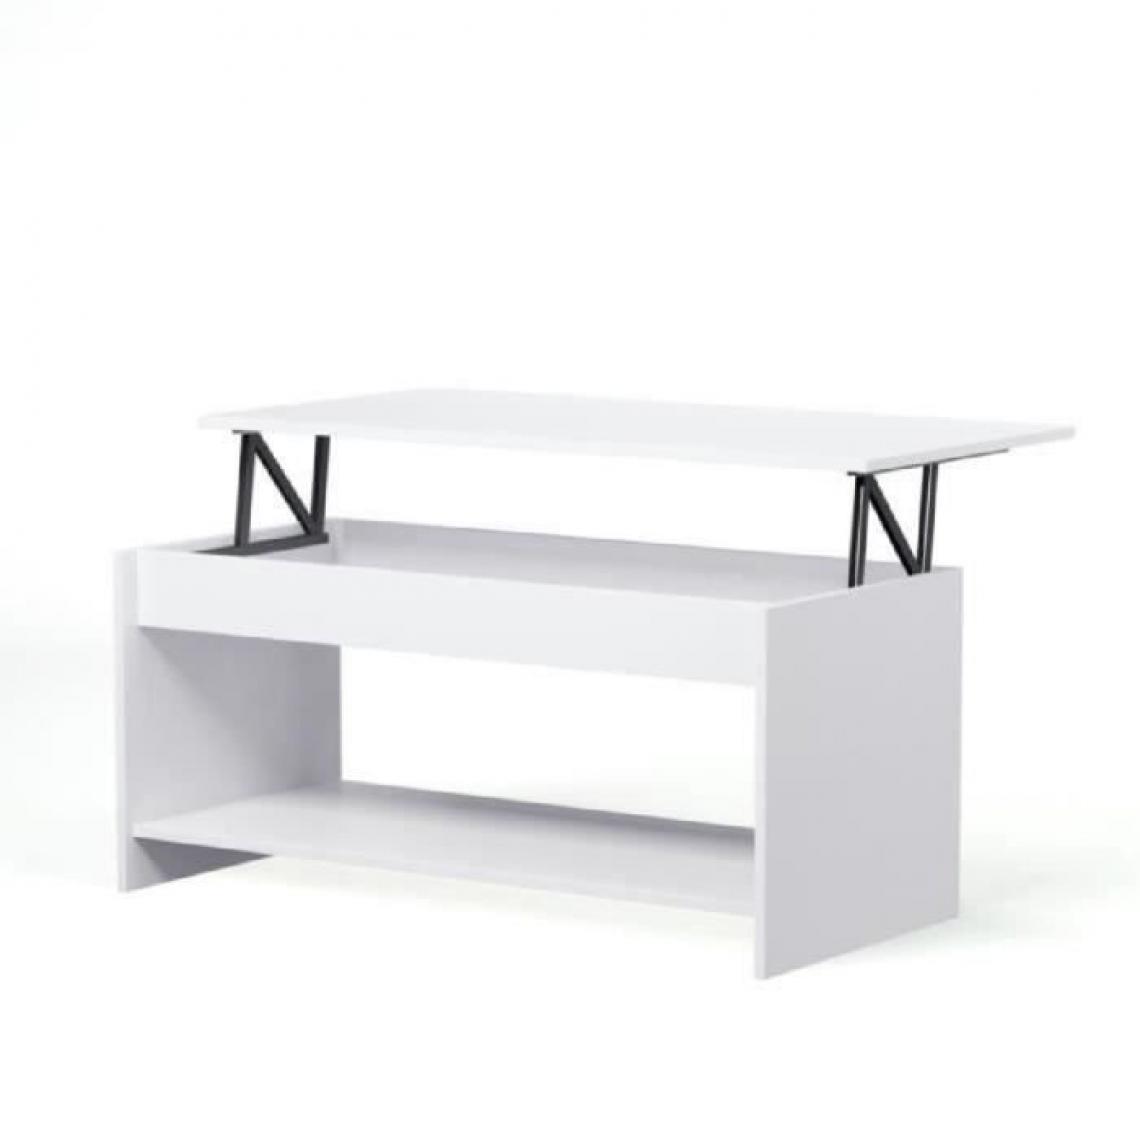 Cstore - HAPPY - table basse relevable style contemporain blanc mat - l 100xl 50 cm - Tables basses